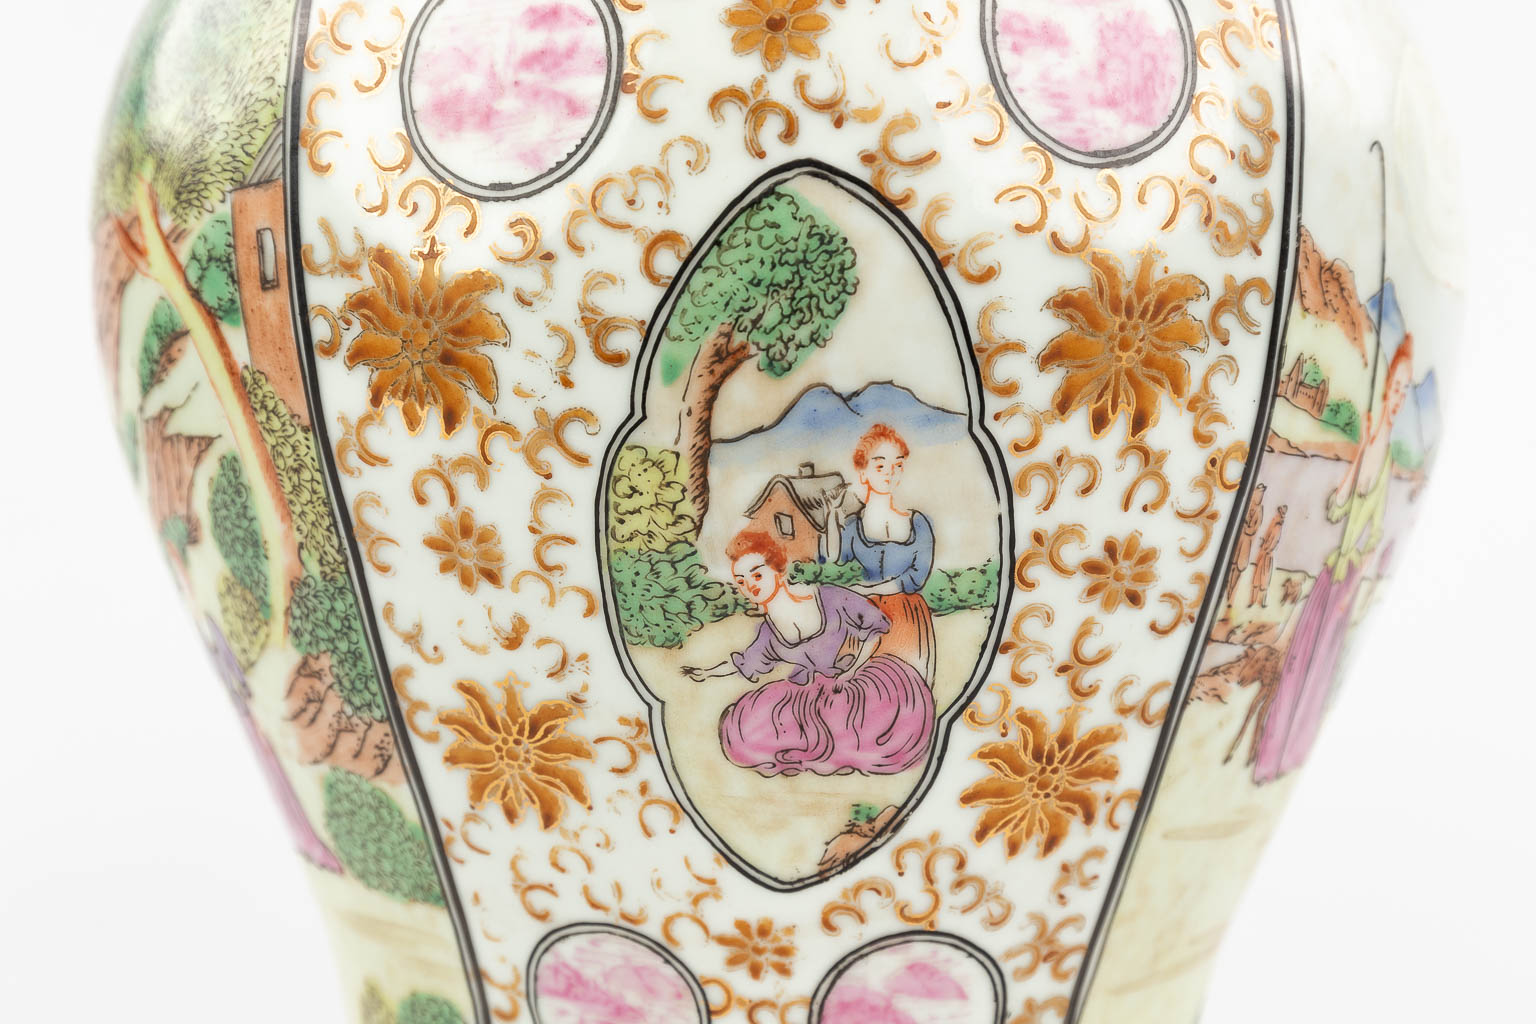 Een Chinese vaas met landschapsdecor, voor de Europese markt. 19de/20ste eeuw. (H: 30 x D: 24 cm)